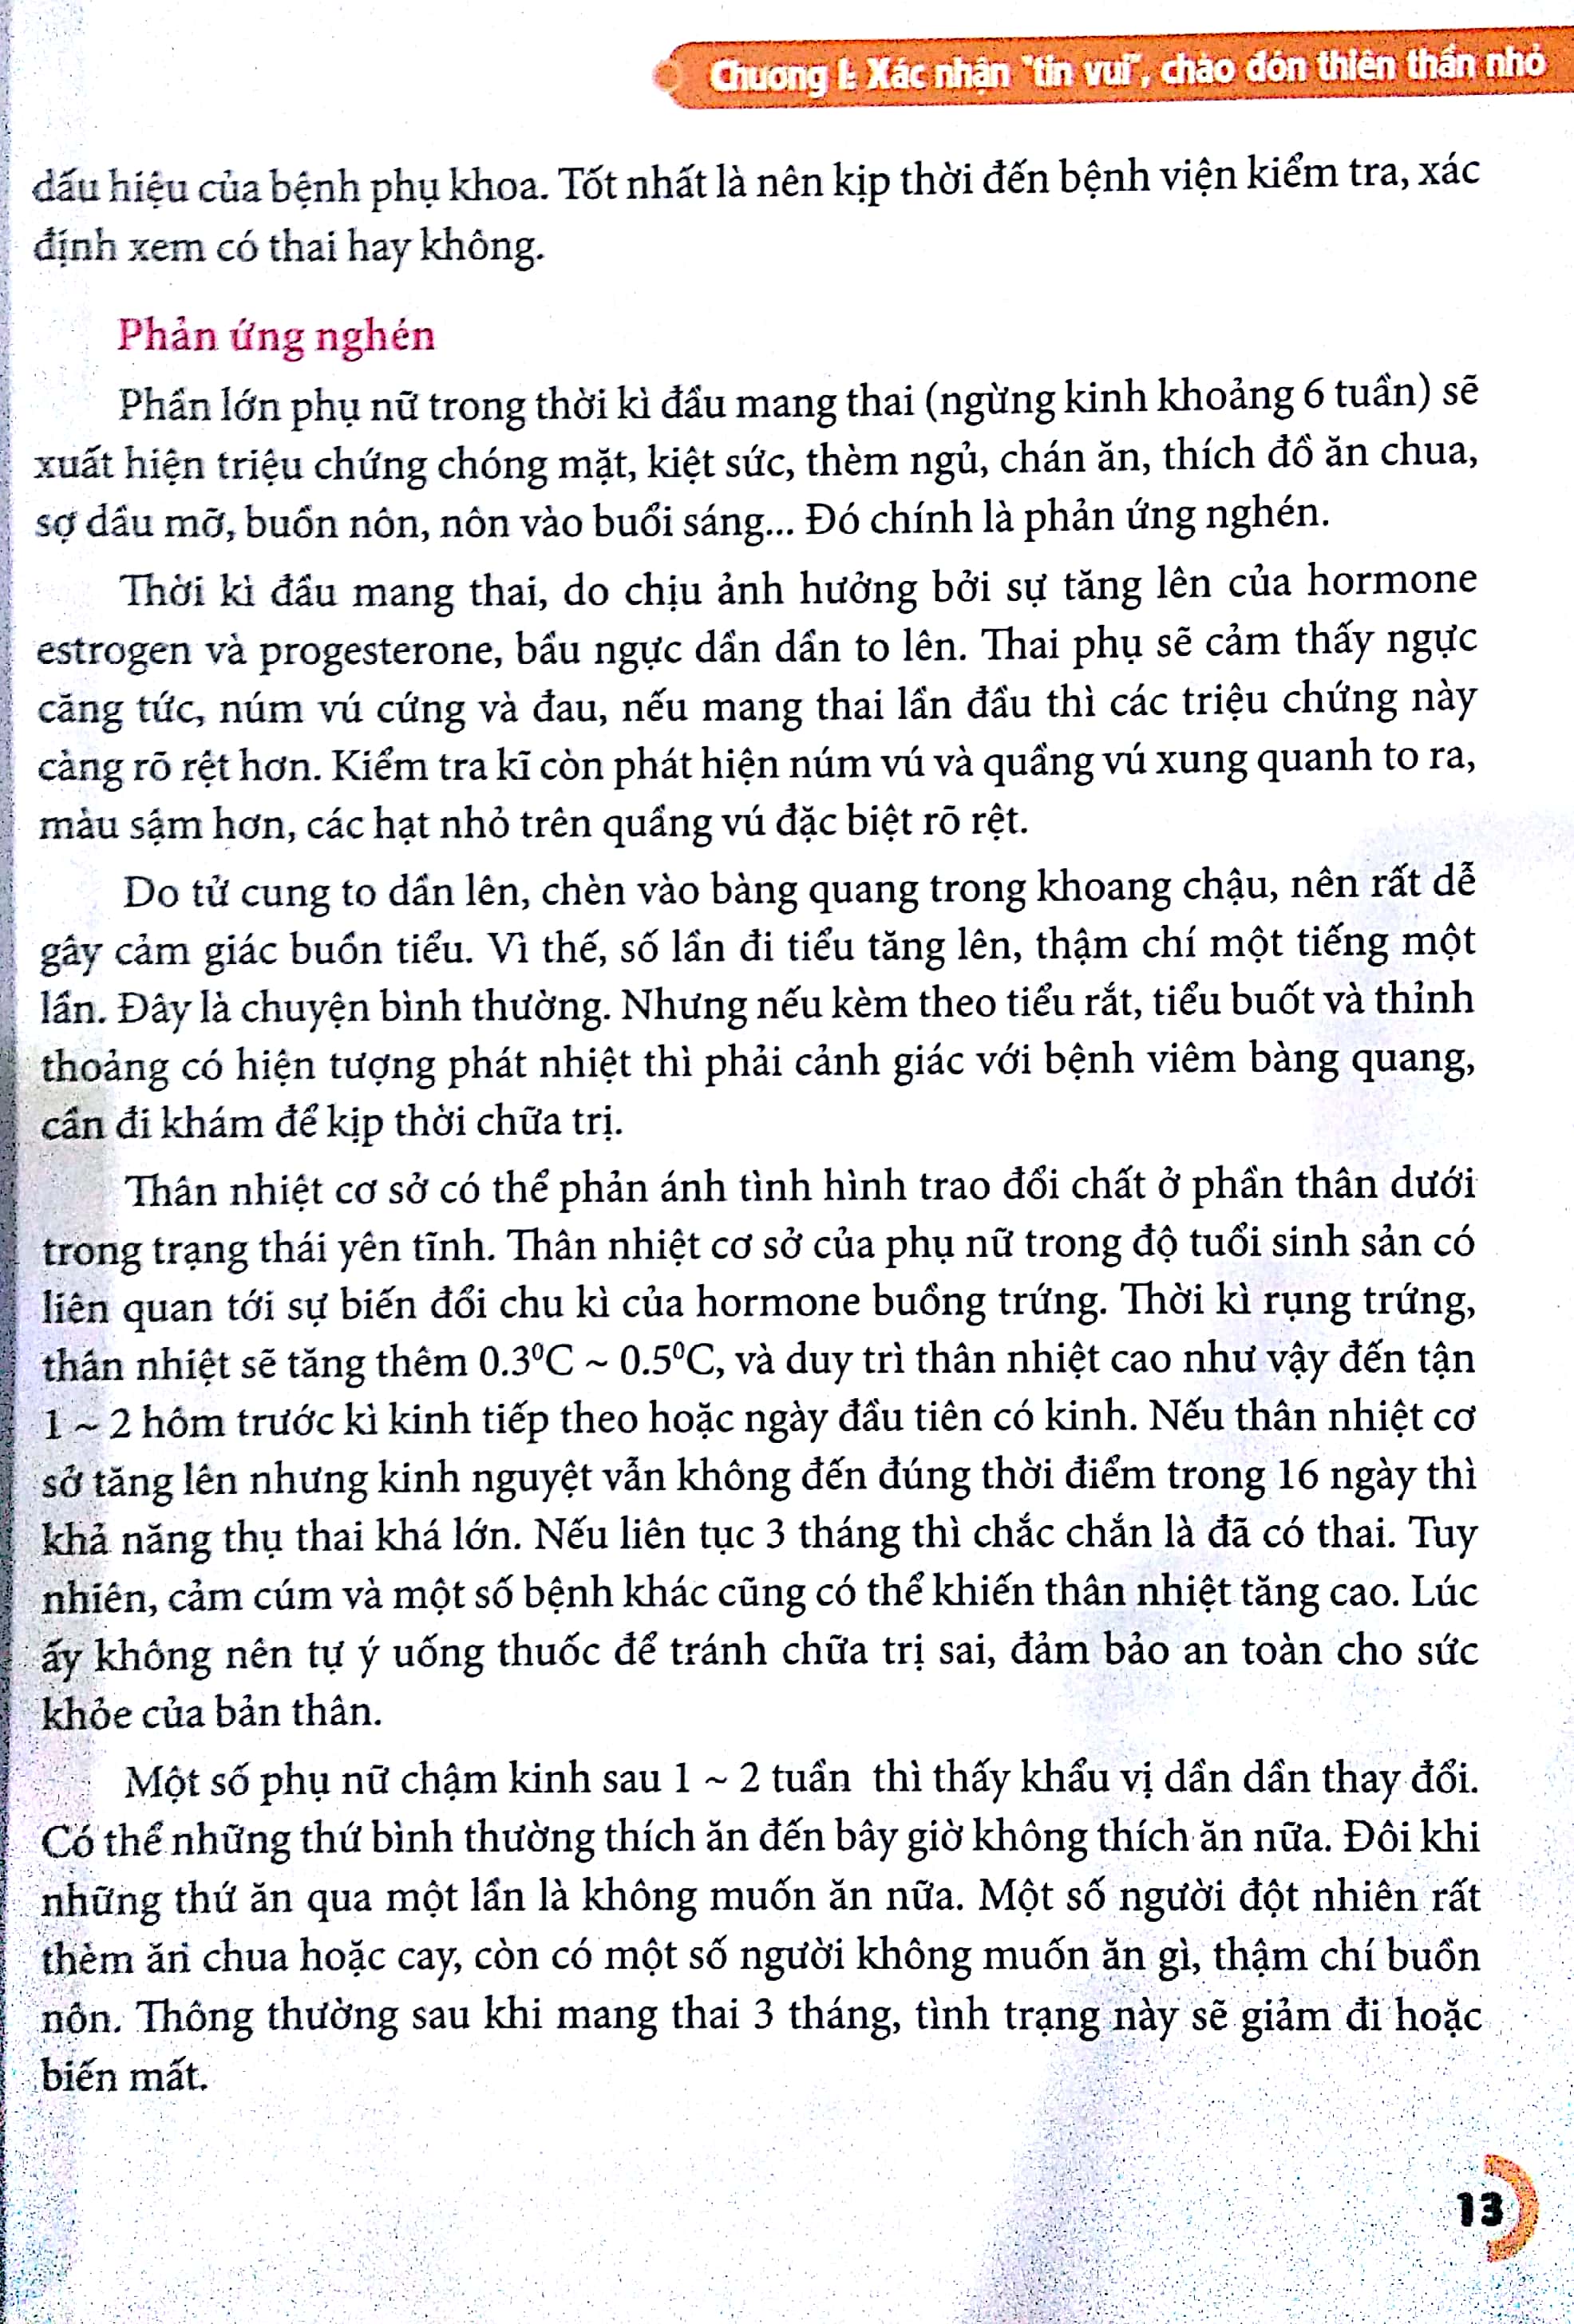 Tri Thức Thai Sản Bà Bầu Cần Biết - 1001 Bí Quyết Để Mẹ Tròn Con Vuông PDF